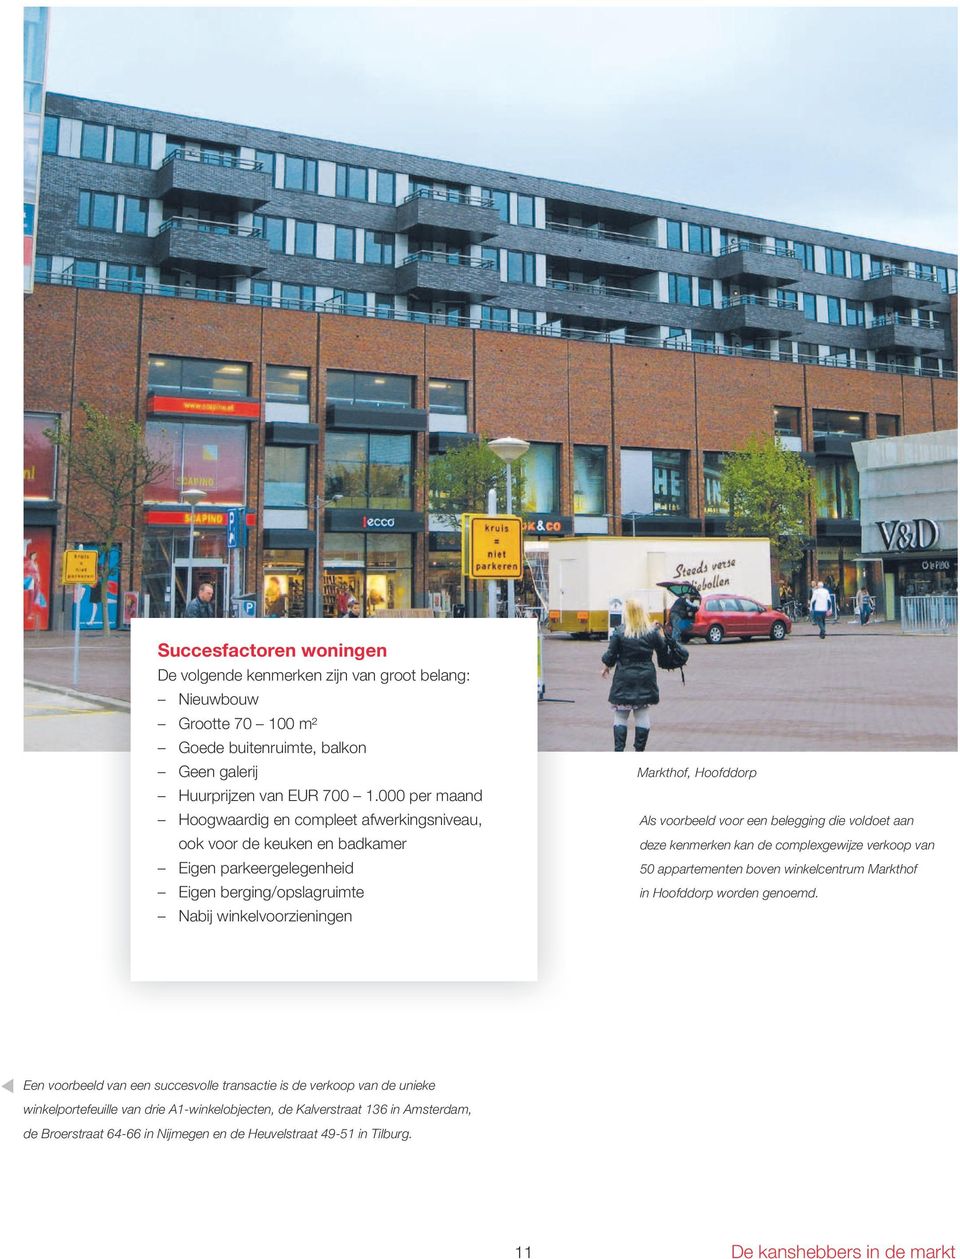 voorbeeld voor een belegging die voldoet aan deze kenmerken kan de complexgewijze verkoop van 50 appartementen boven winkelcentrum Markthof in Hoofddorp worden genoemd.